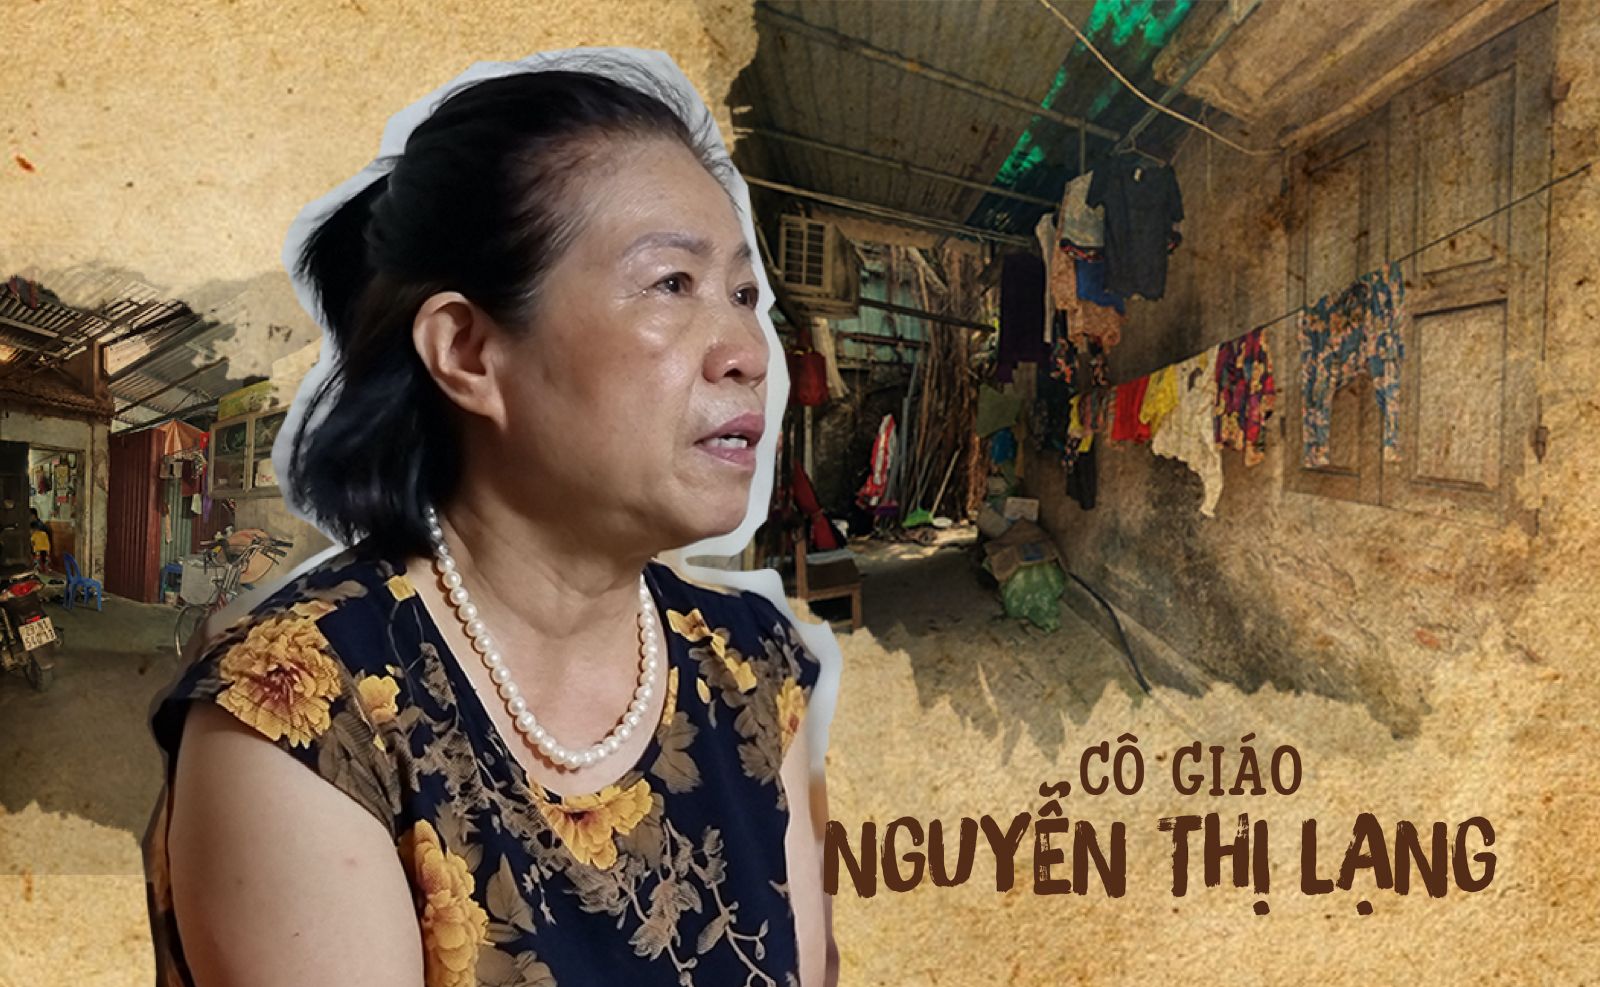 Cựu giáo viên Nguyễn Thị Lạng